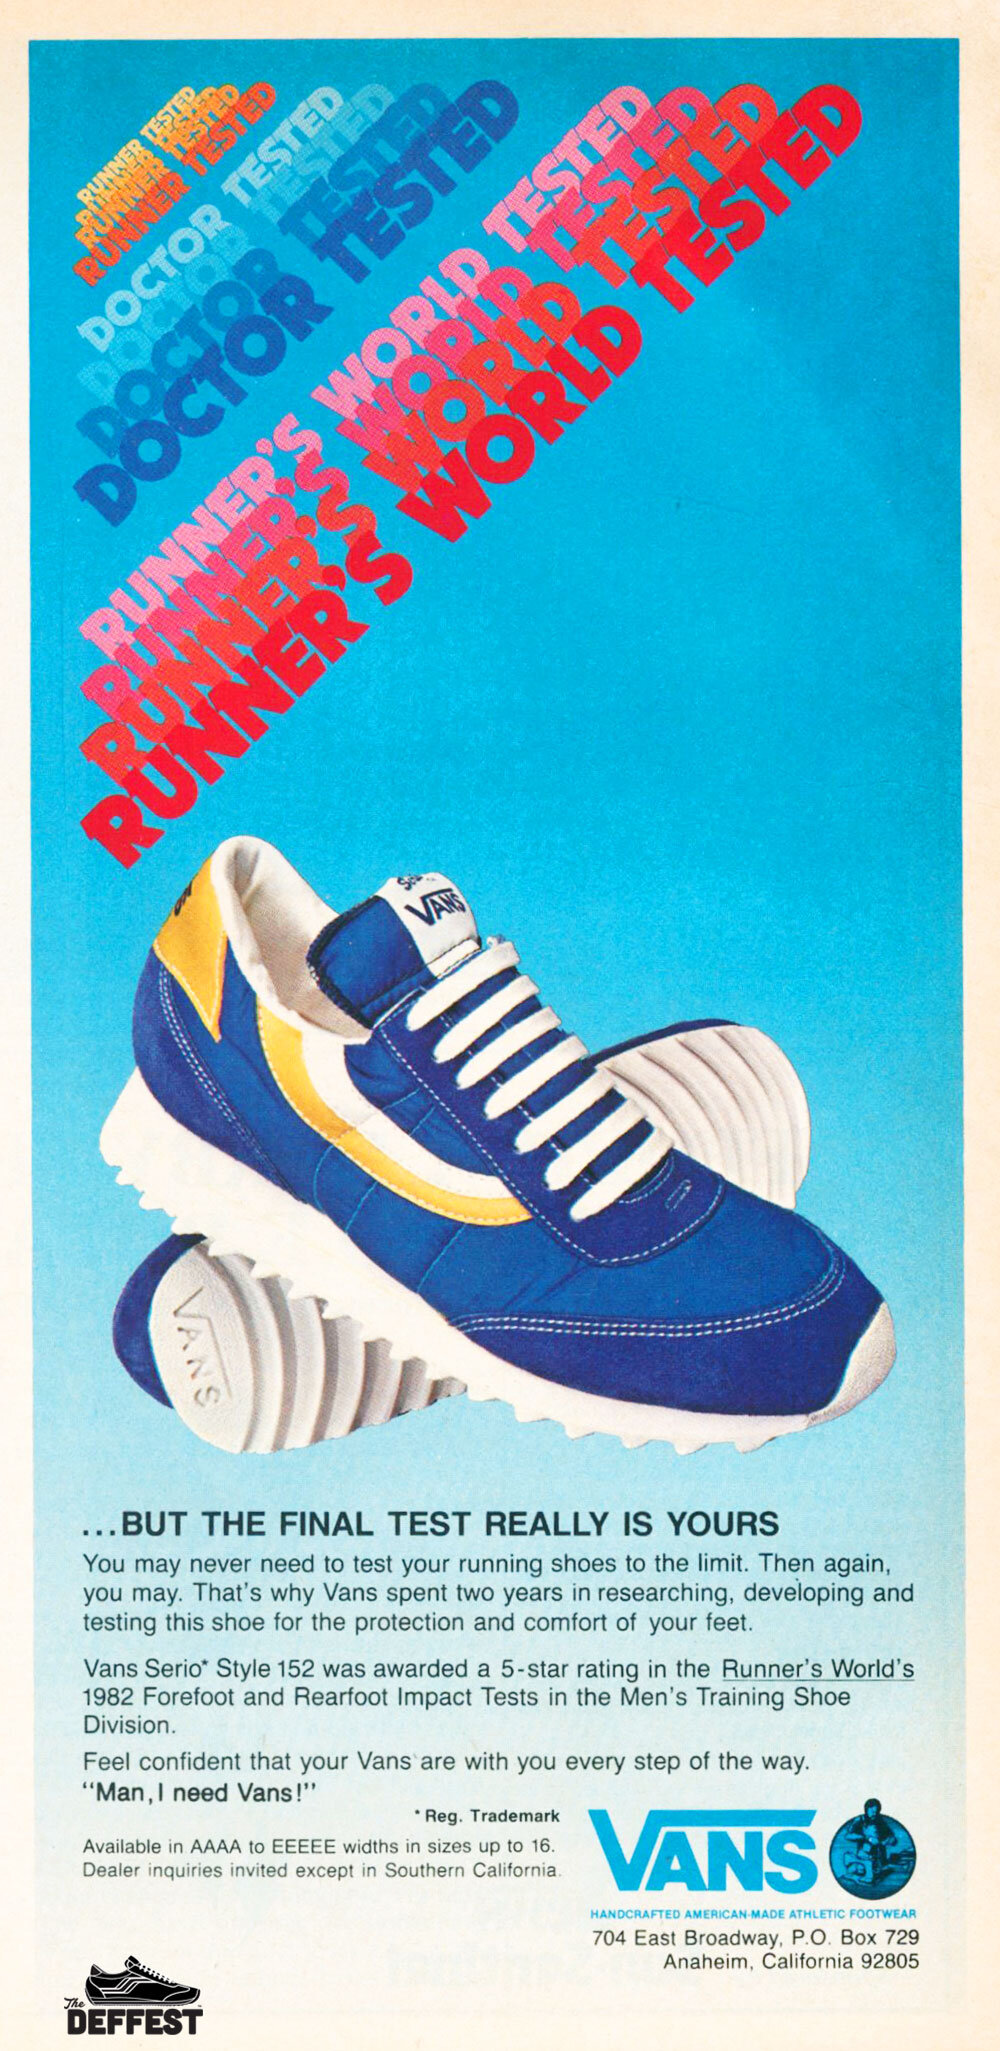 vans shoes — The Deffest®. A vintage 